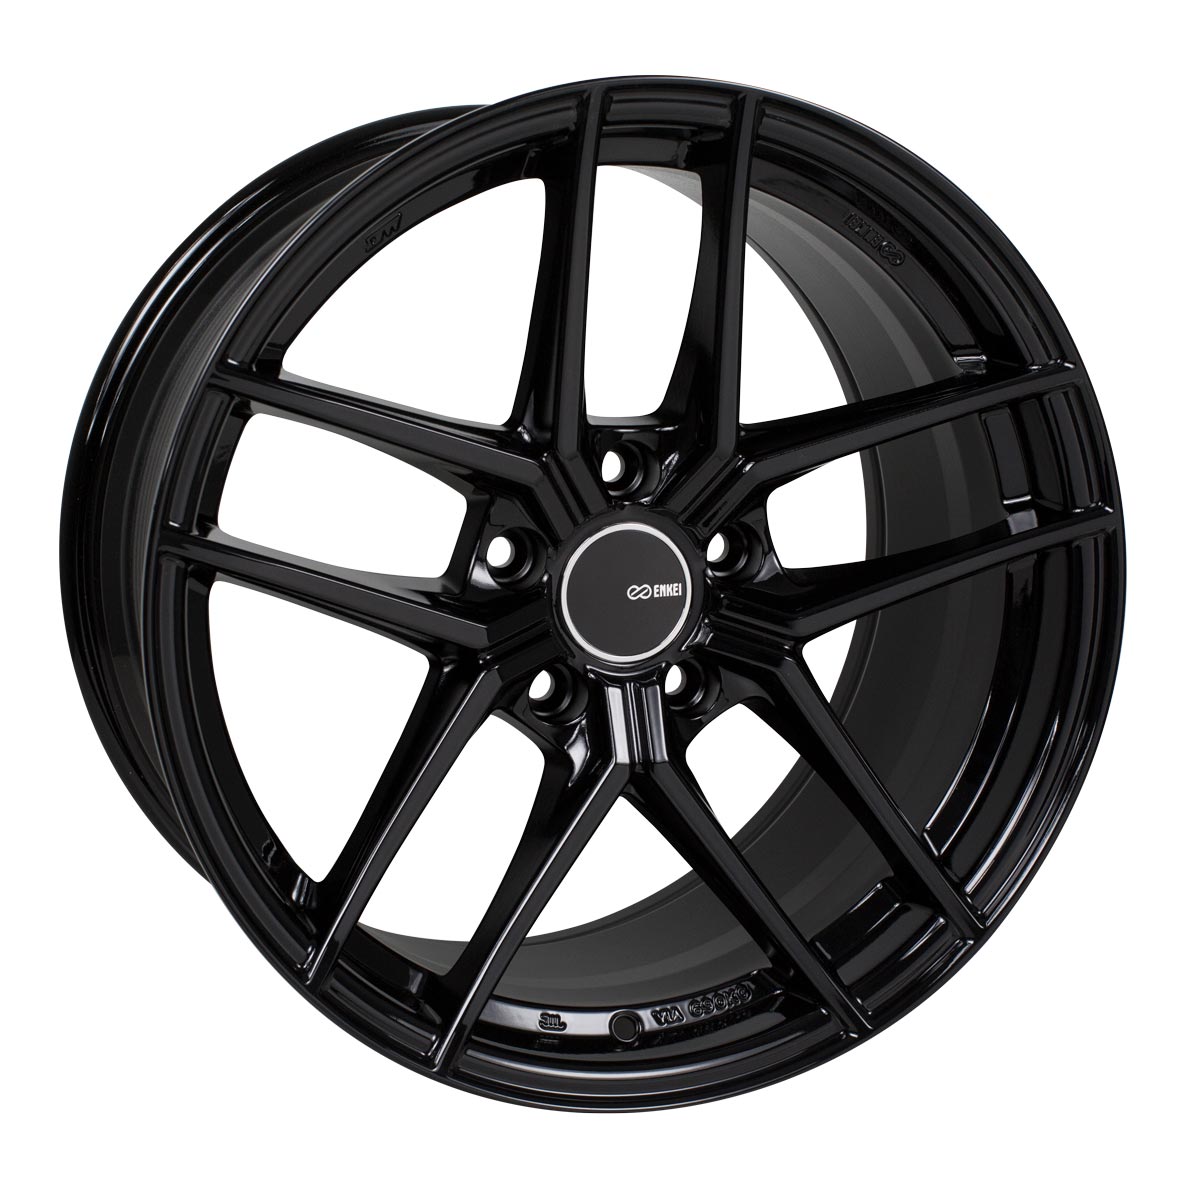 Enkei TY-5 Wheel Gloss Black 18x8.5 +35 5x114.3 498-885-6535BK